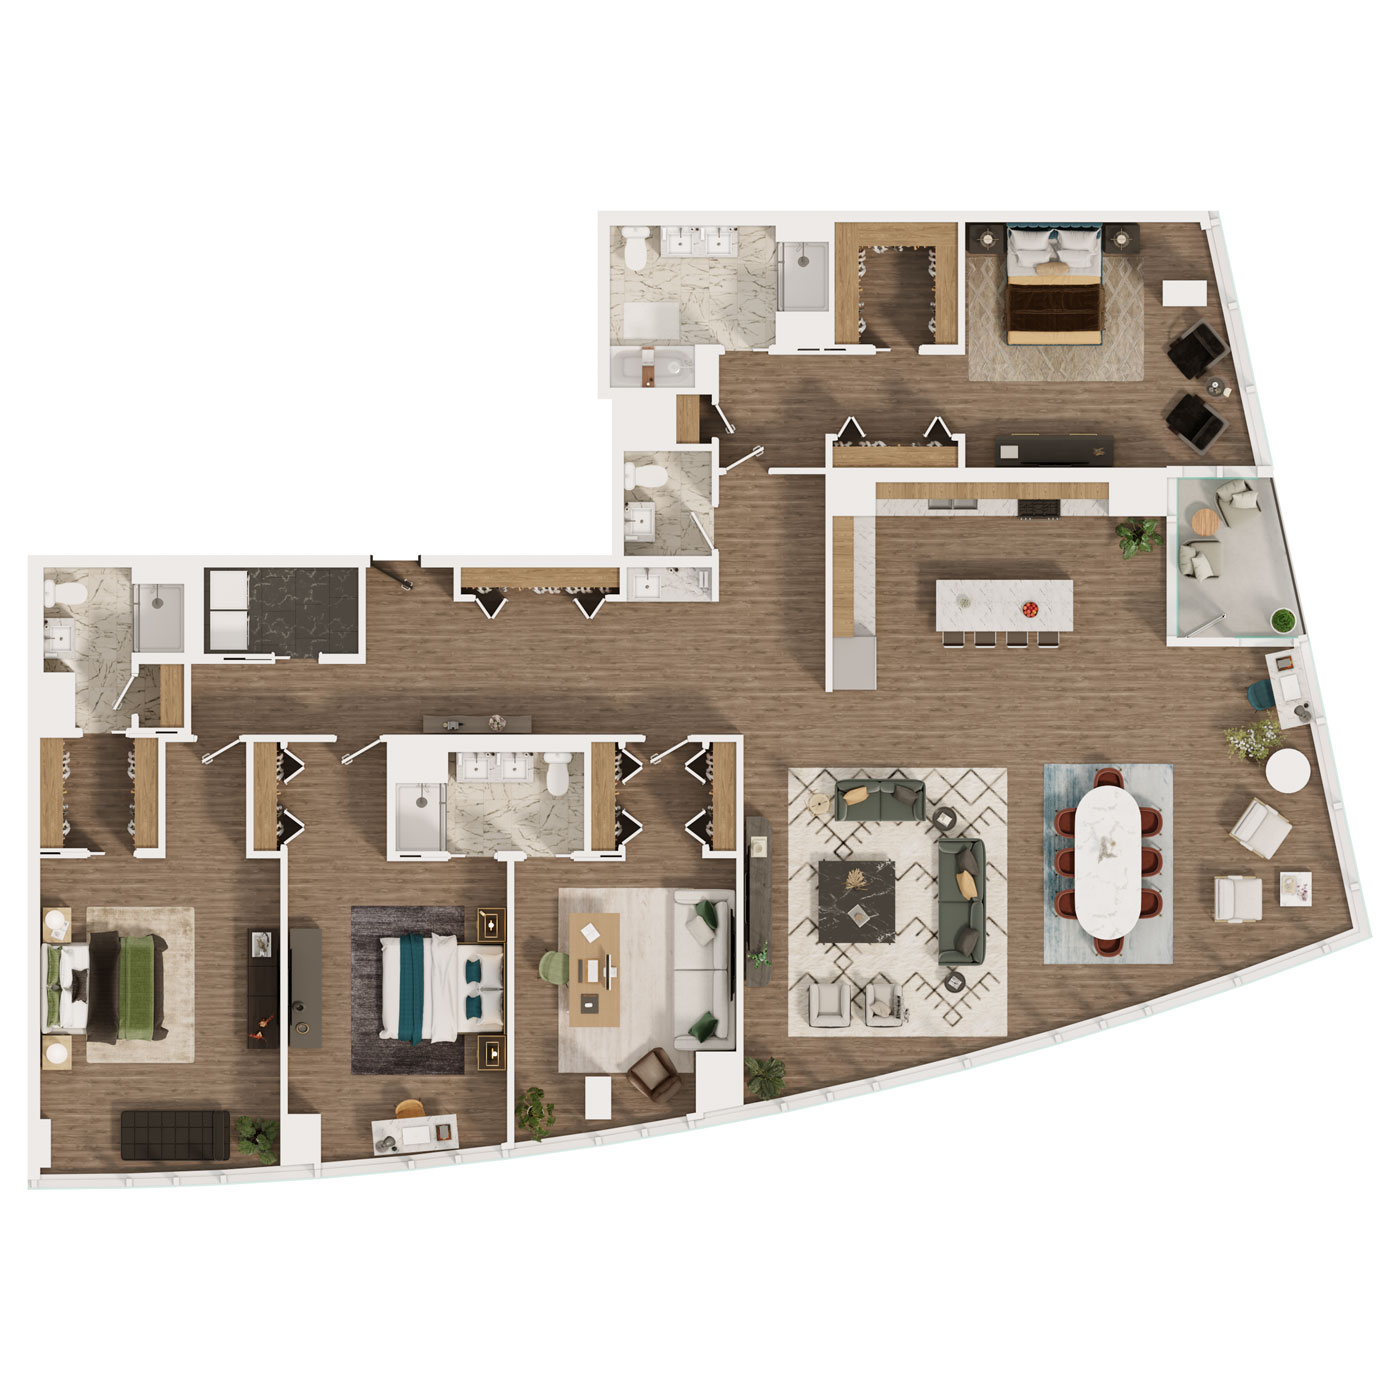 4 bedroom penthouse floor plan 